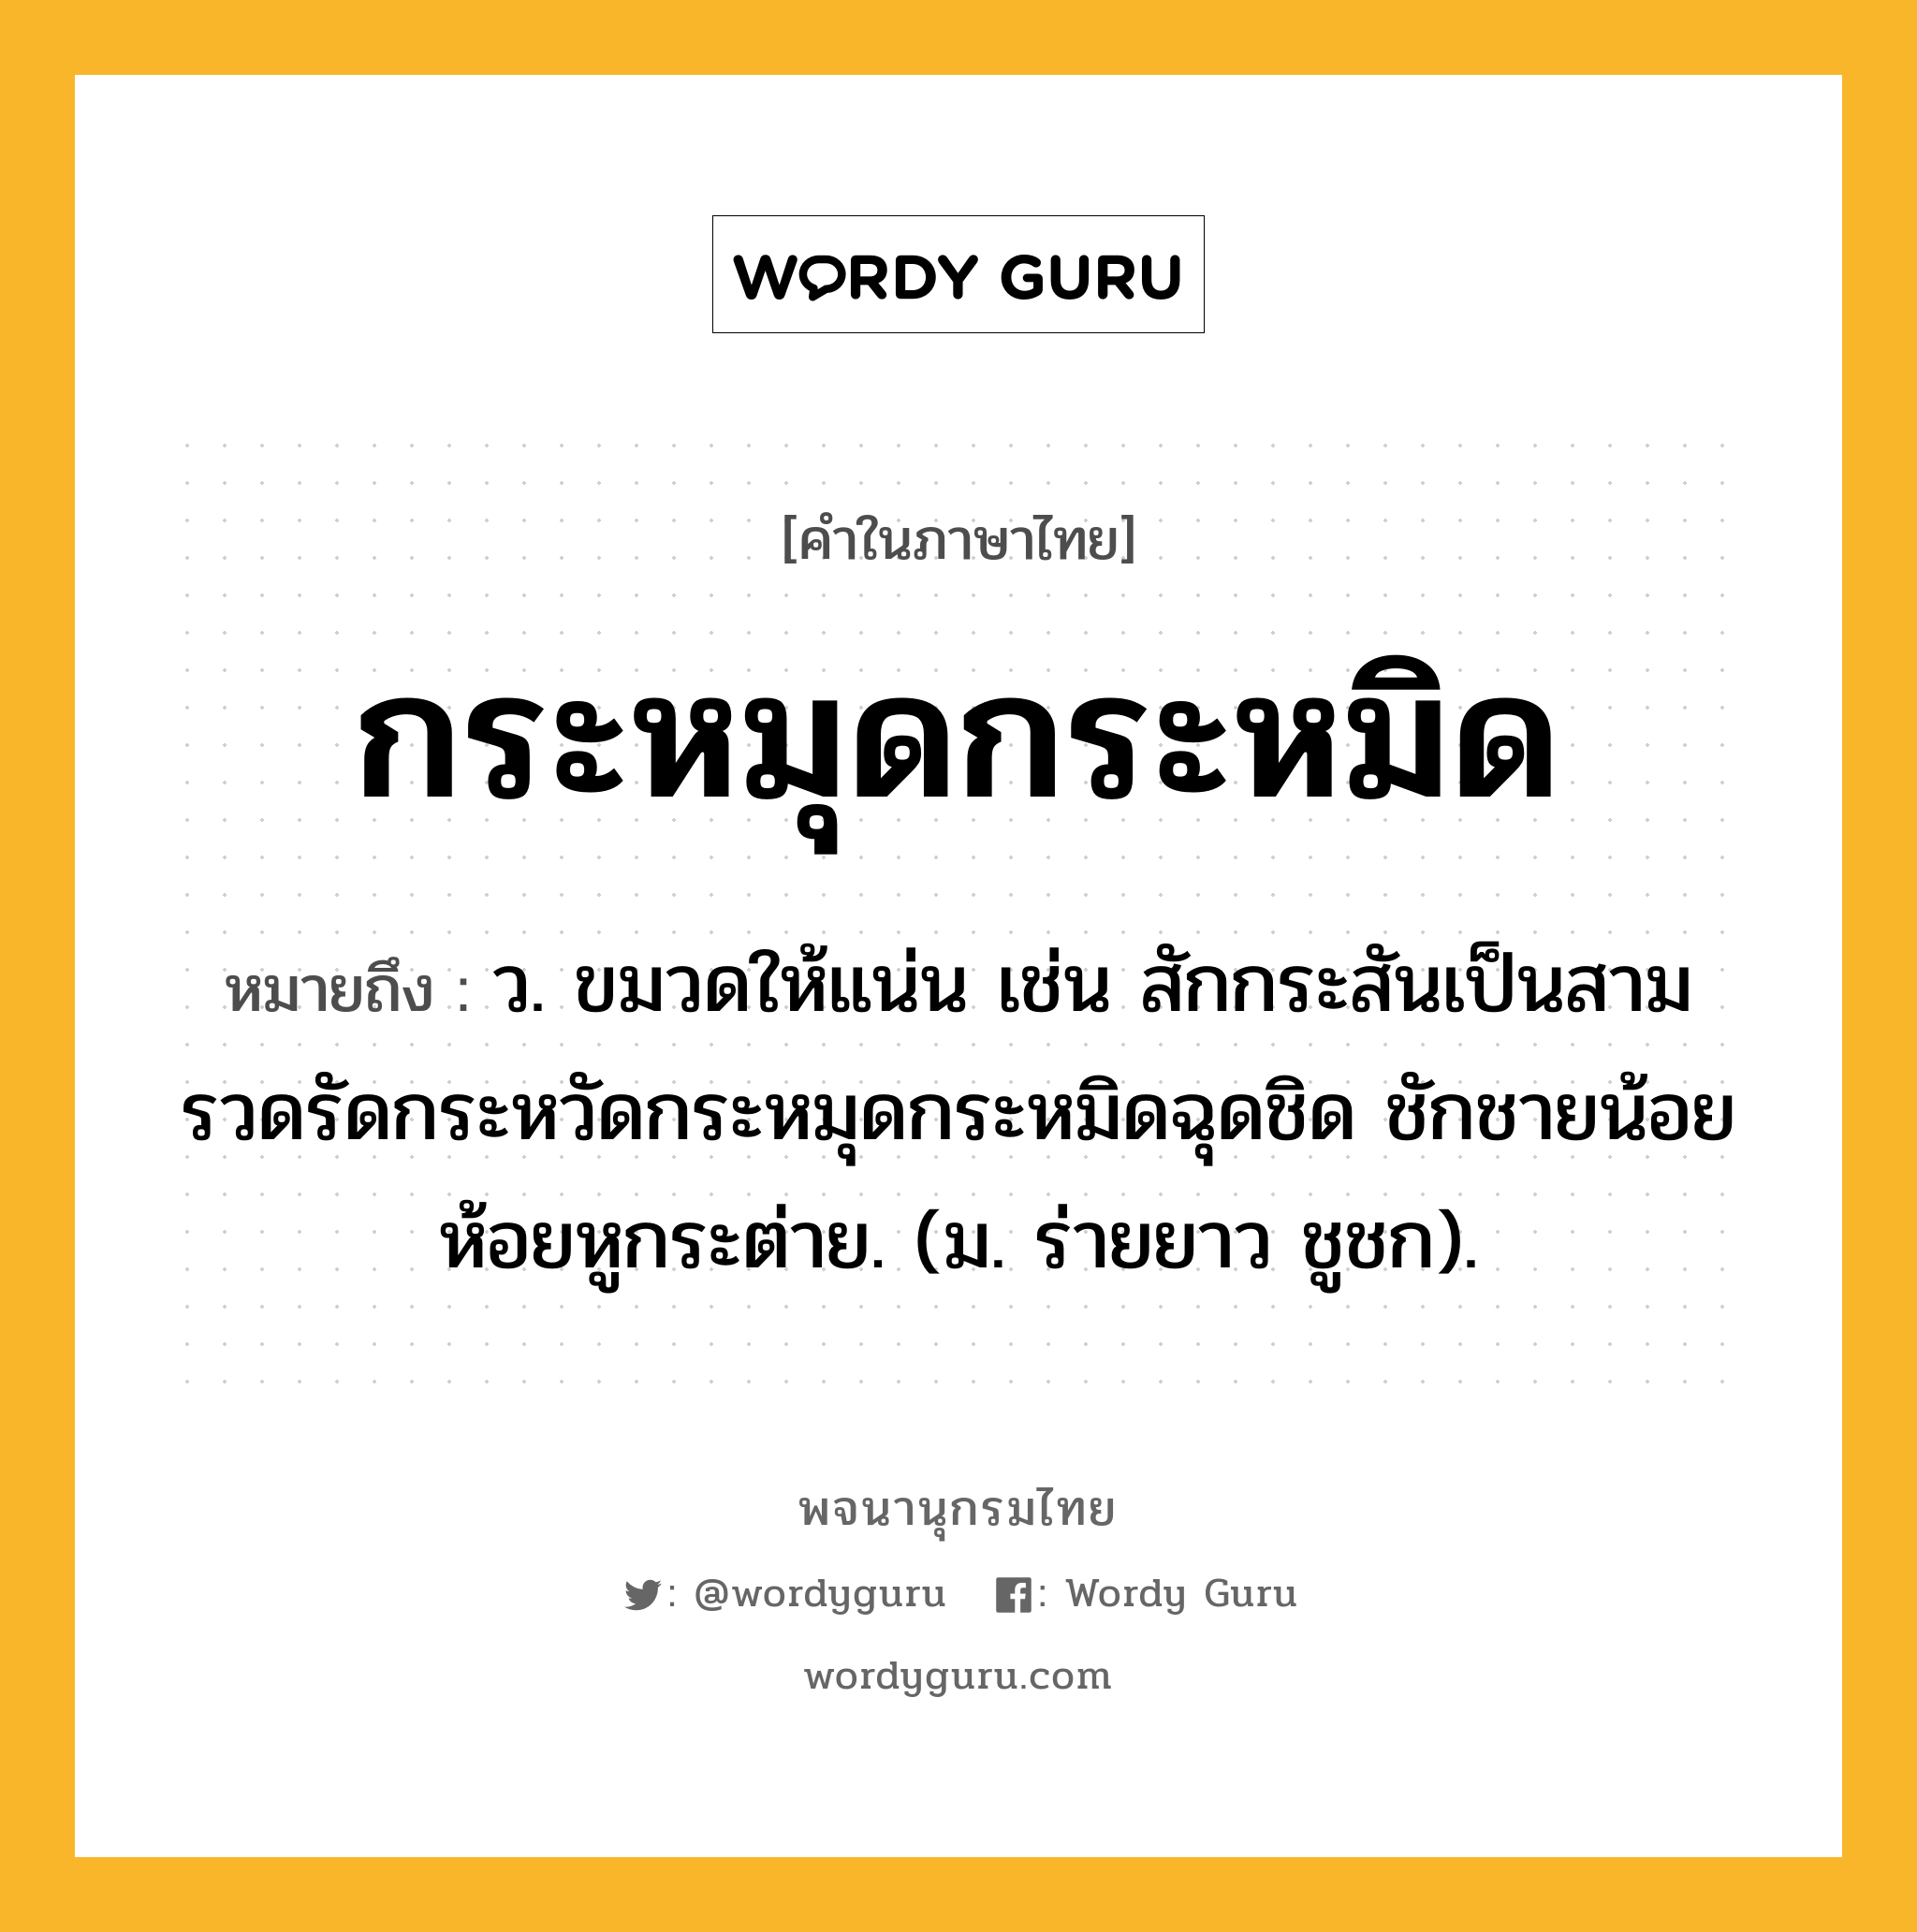 กระหมุดกระหมิด ความหมาย หมายถึงอะไร?, คำในภาษาไทย กระหมุดกระหมิด หมายถึง ว. ขมวดให้แน่น เช่น สักกระสันเป็นสามรวดรัดกระหวัดกระหมุดกระหมิดฉุดชิด ชักชายน้อยห้อยหูกระต่าย. (ม. ร่ายยาว ชูชก).